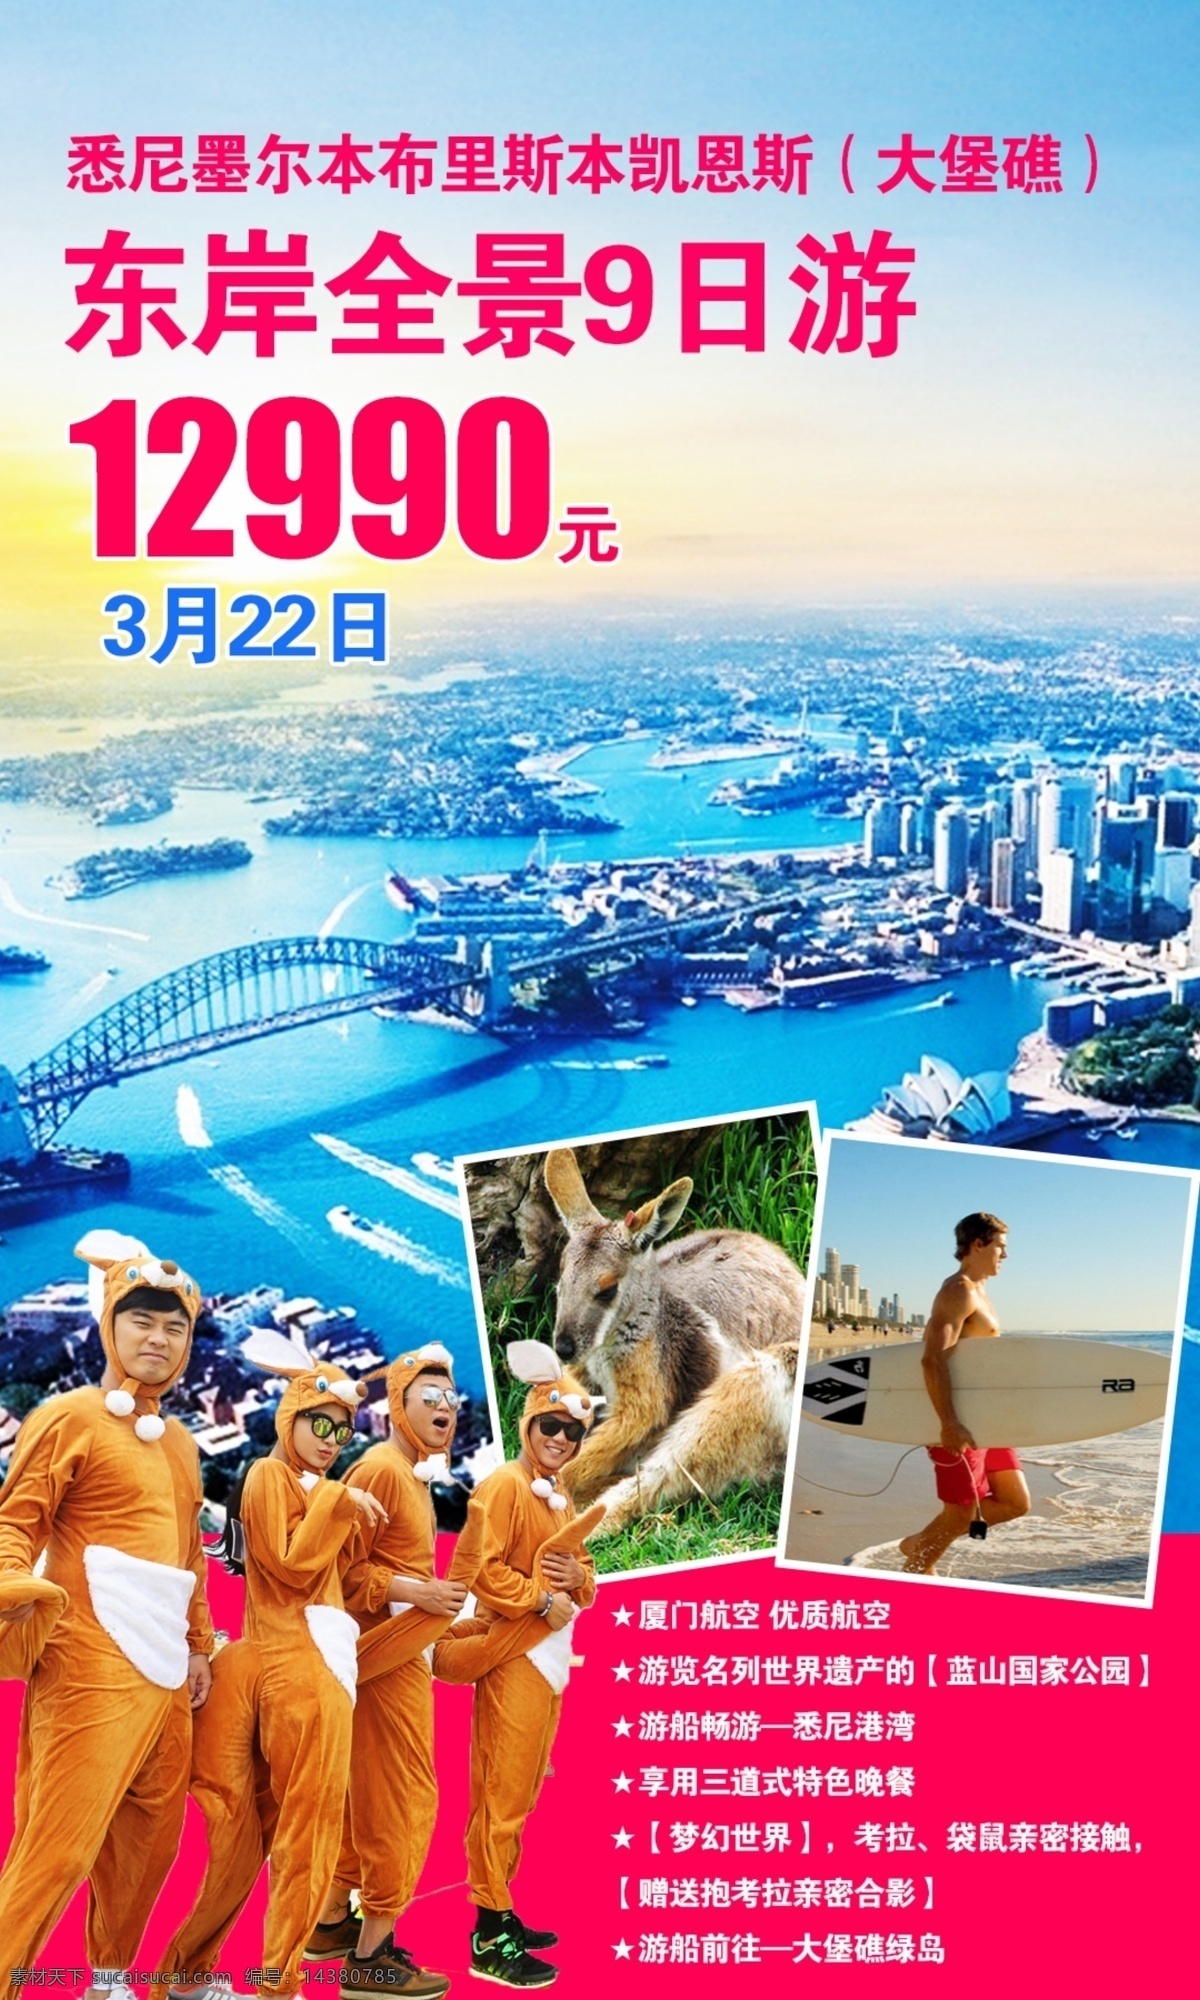 澳新旅游广告 澳新旅游 广告 宣传单页